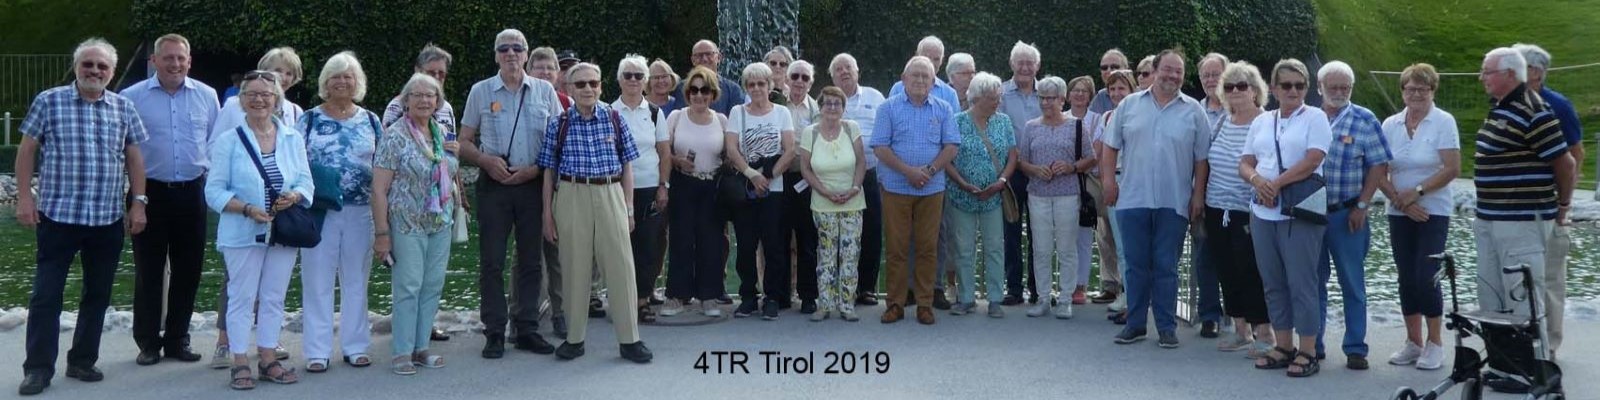 4TR Tirol 2019_klein.jpg